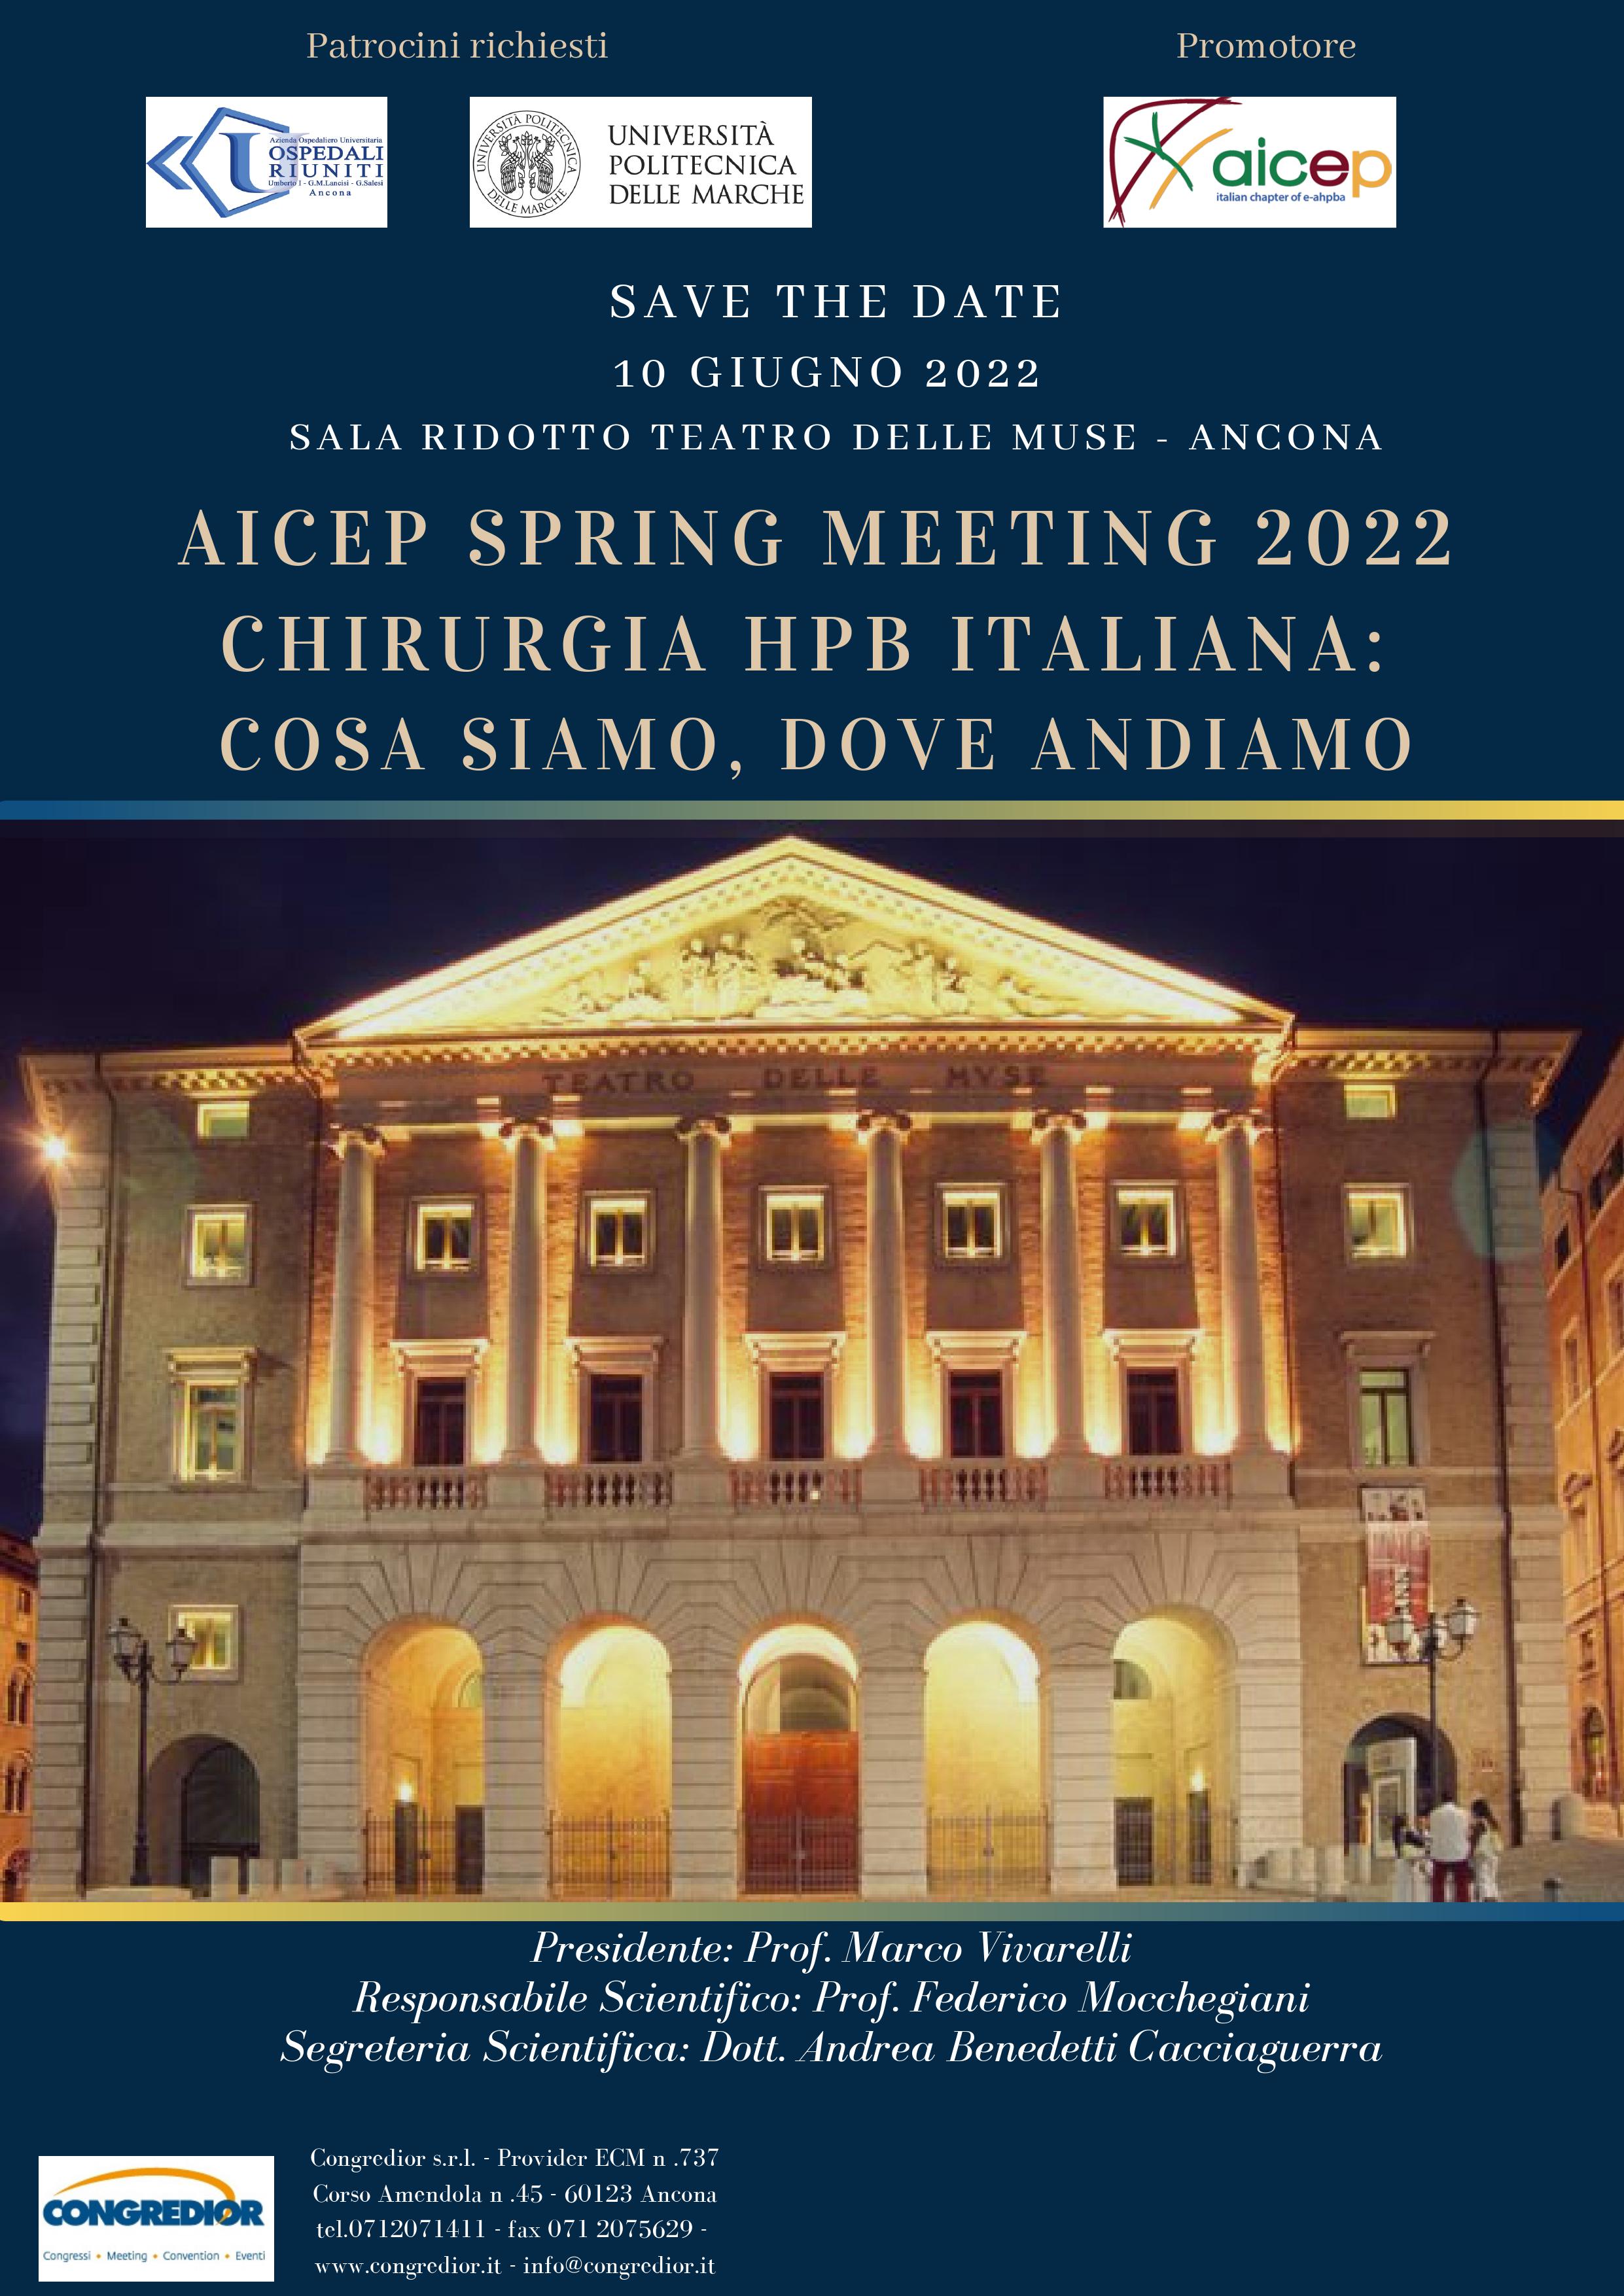 Course Image AICEP SPRING MEETING 2022 CHIRURGIA HPB ITALIANA: COSA SIAMO, DOVE ANDIAMO